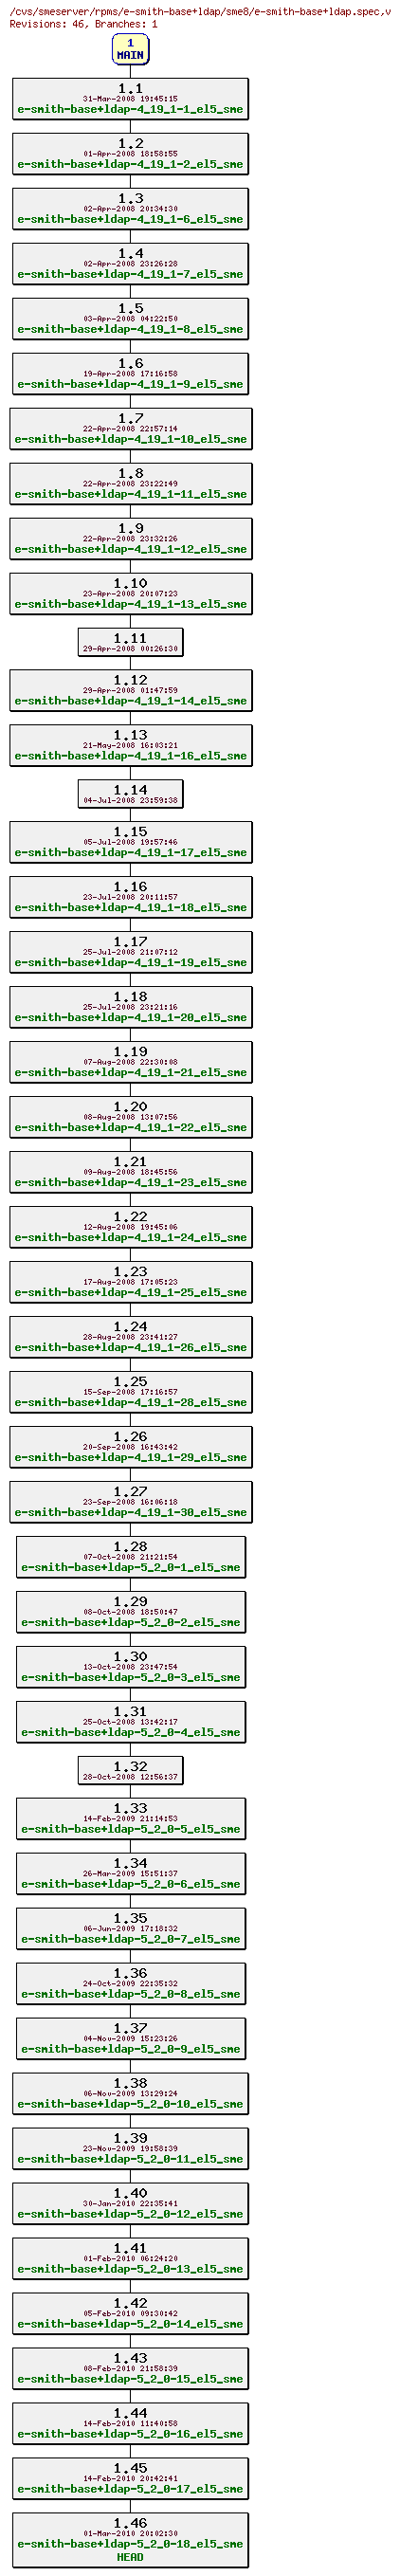 Revisions of rpms/e-smith-base+ldap/sme8/e-smith-base+ldap.spec